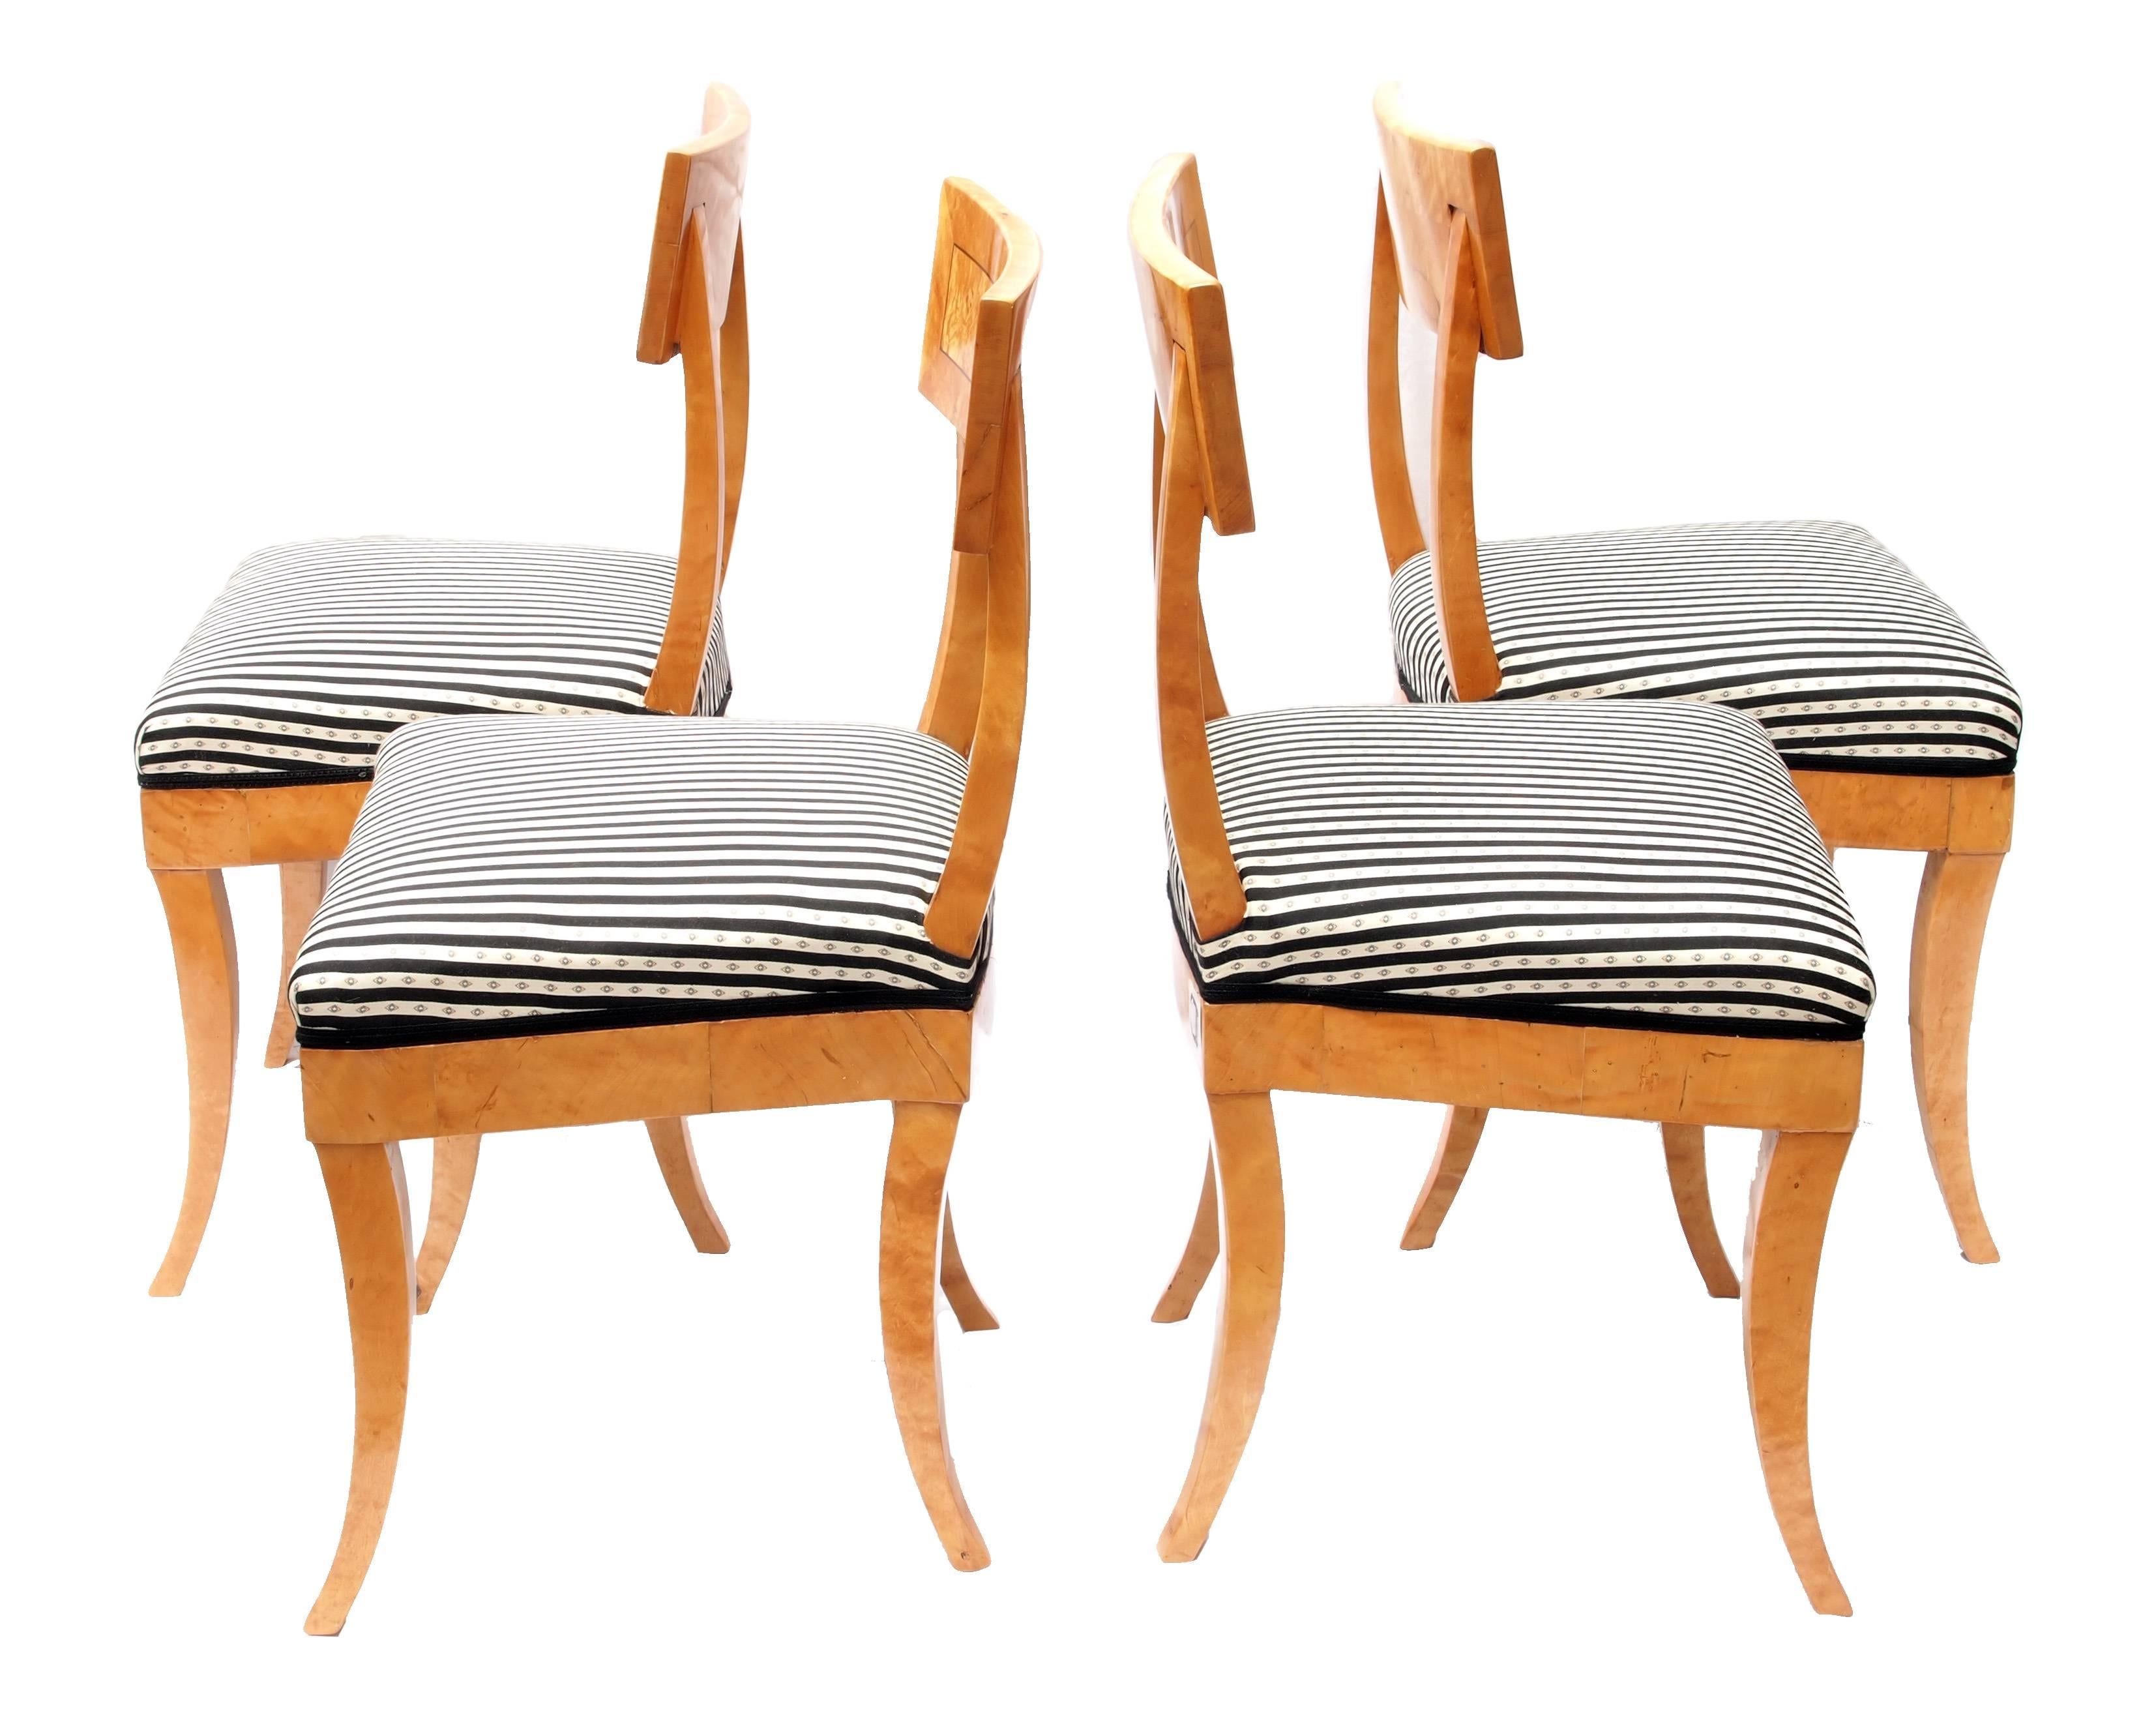 Les quatre chaises datent de la période Biedermeier, vers 1820. Les chaises sont solides et plaquées en bois de bouleau. L'ensemble est en très bon état. Les chaises sont nouvellement tapissées selon le style traditionnel.